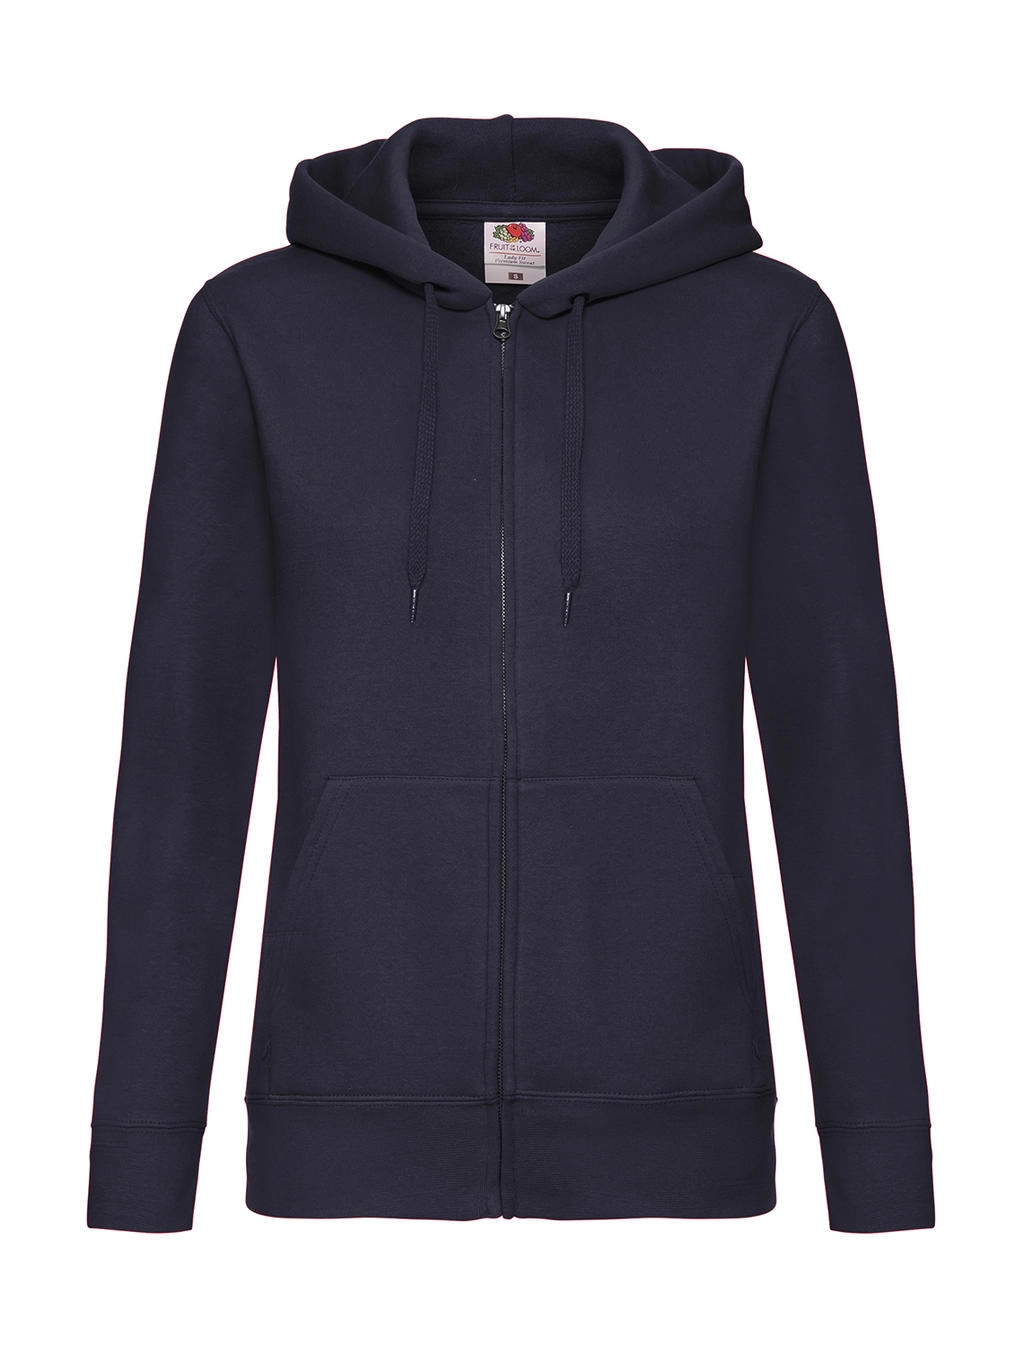 Premium Hooded Sweat Jacket Lady-Fit zum Besticken und Bedrucken in der Farbe Deep Navy mit Ihren Logo, Schriftzug oder Motiv.